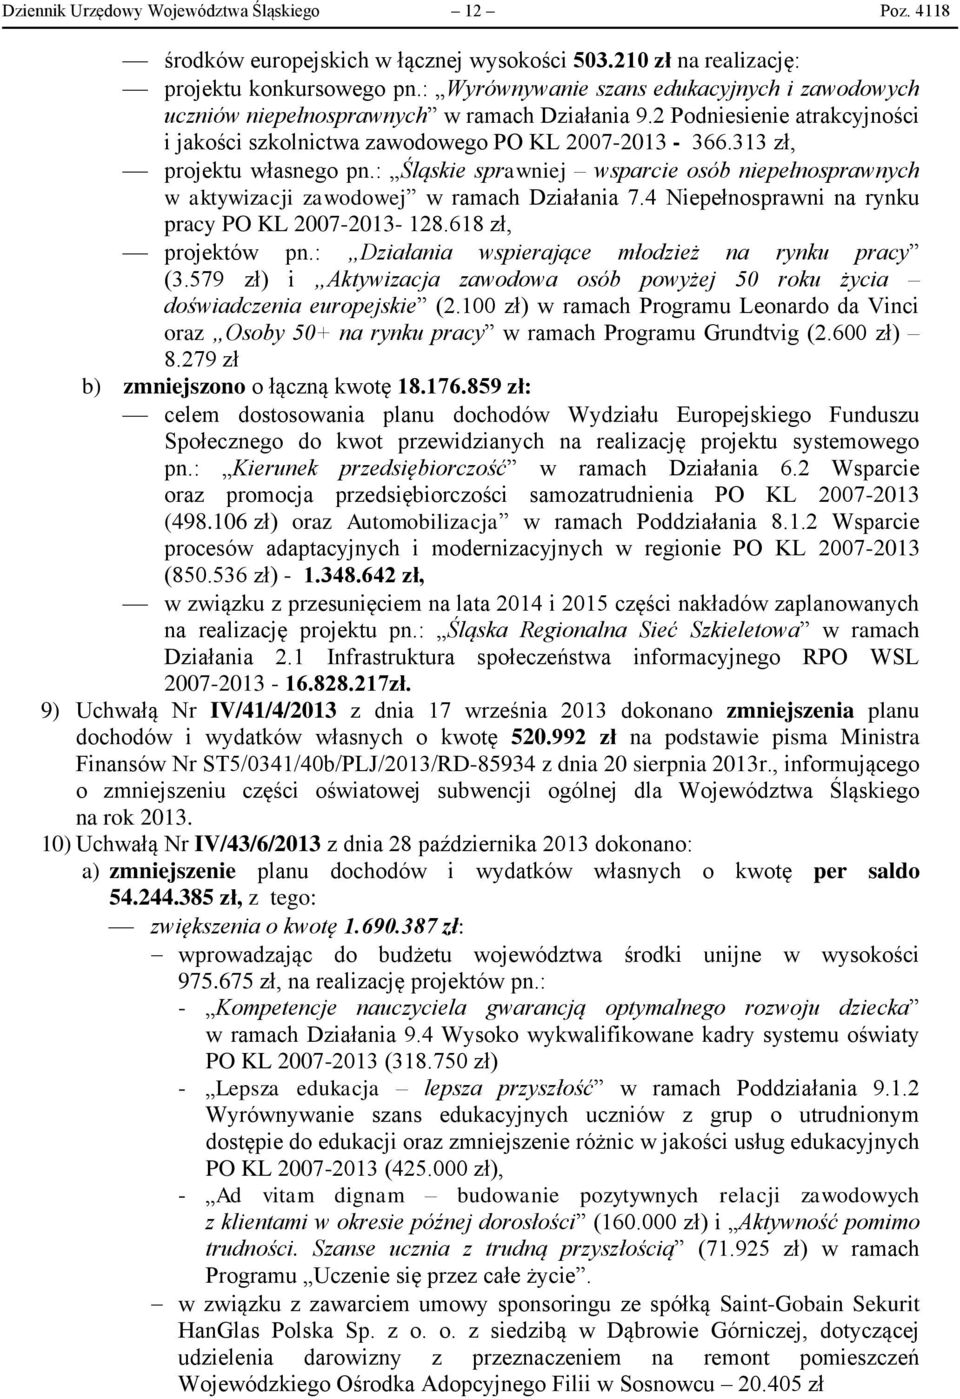 313 zł, projektu własnego pn.: Śląskie sprawniej wsparcie osób niepełnosprawnych w aktywizacji zawodowej w ramach Działania 7.4 Niepełnosprawni na rynku pracy PO KL 2007-2013- 128.